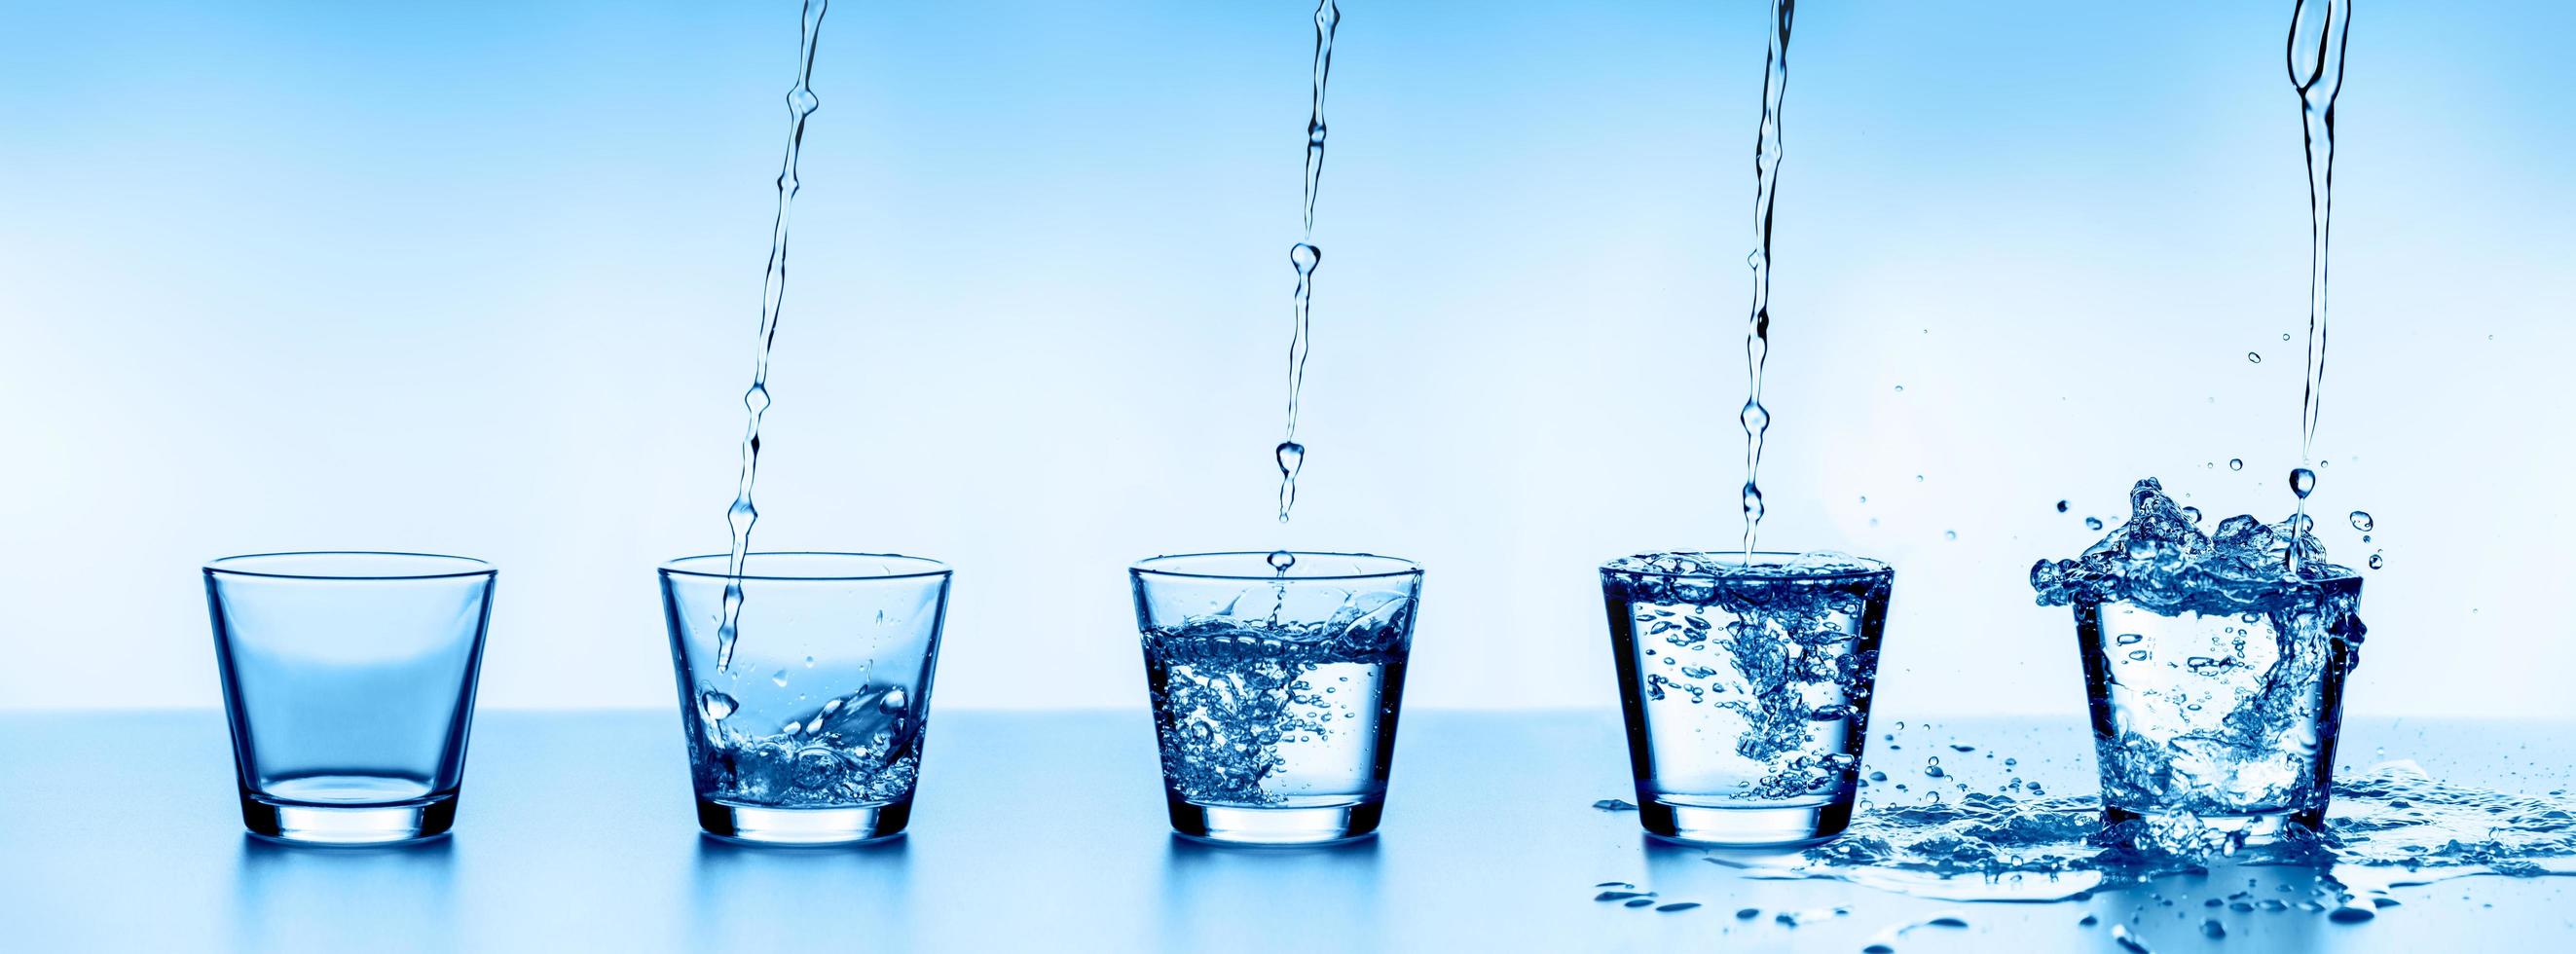 cinco vasos de agua de agua, dispuestos en orden ascendente. foto